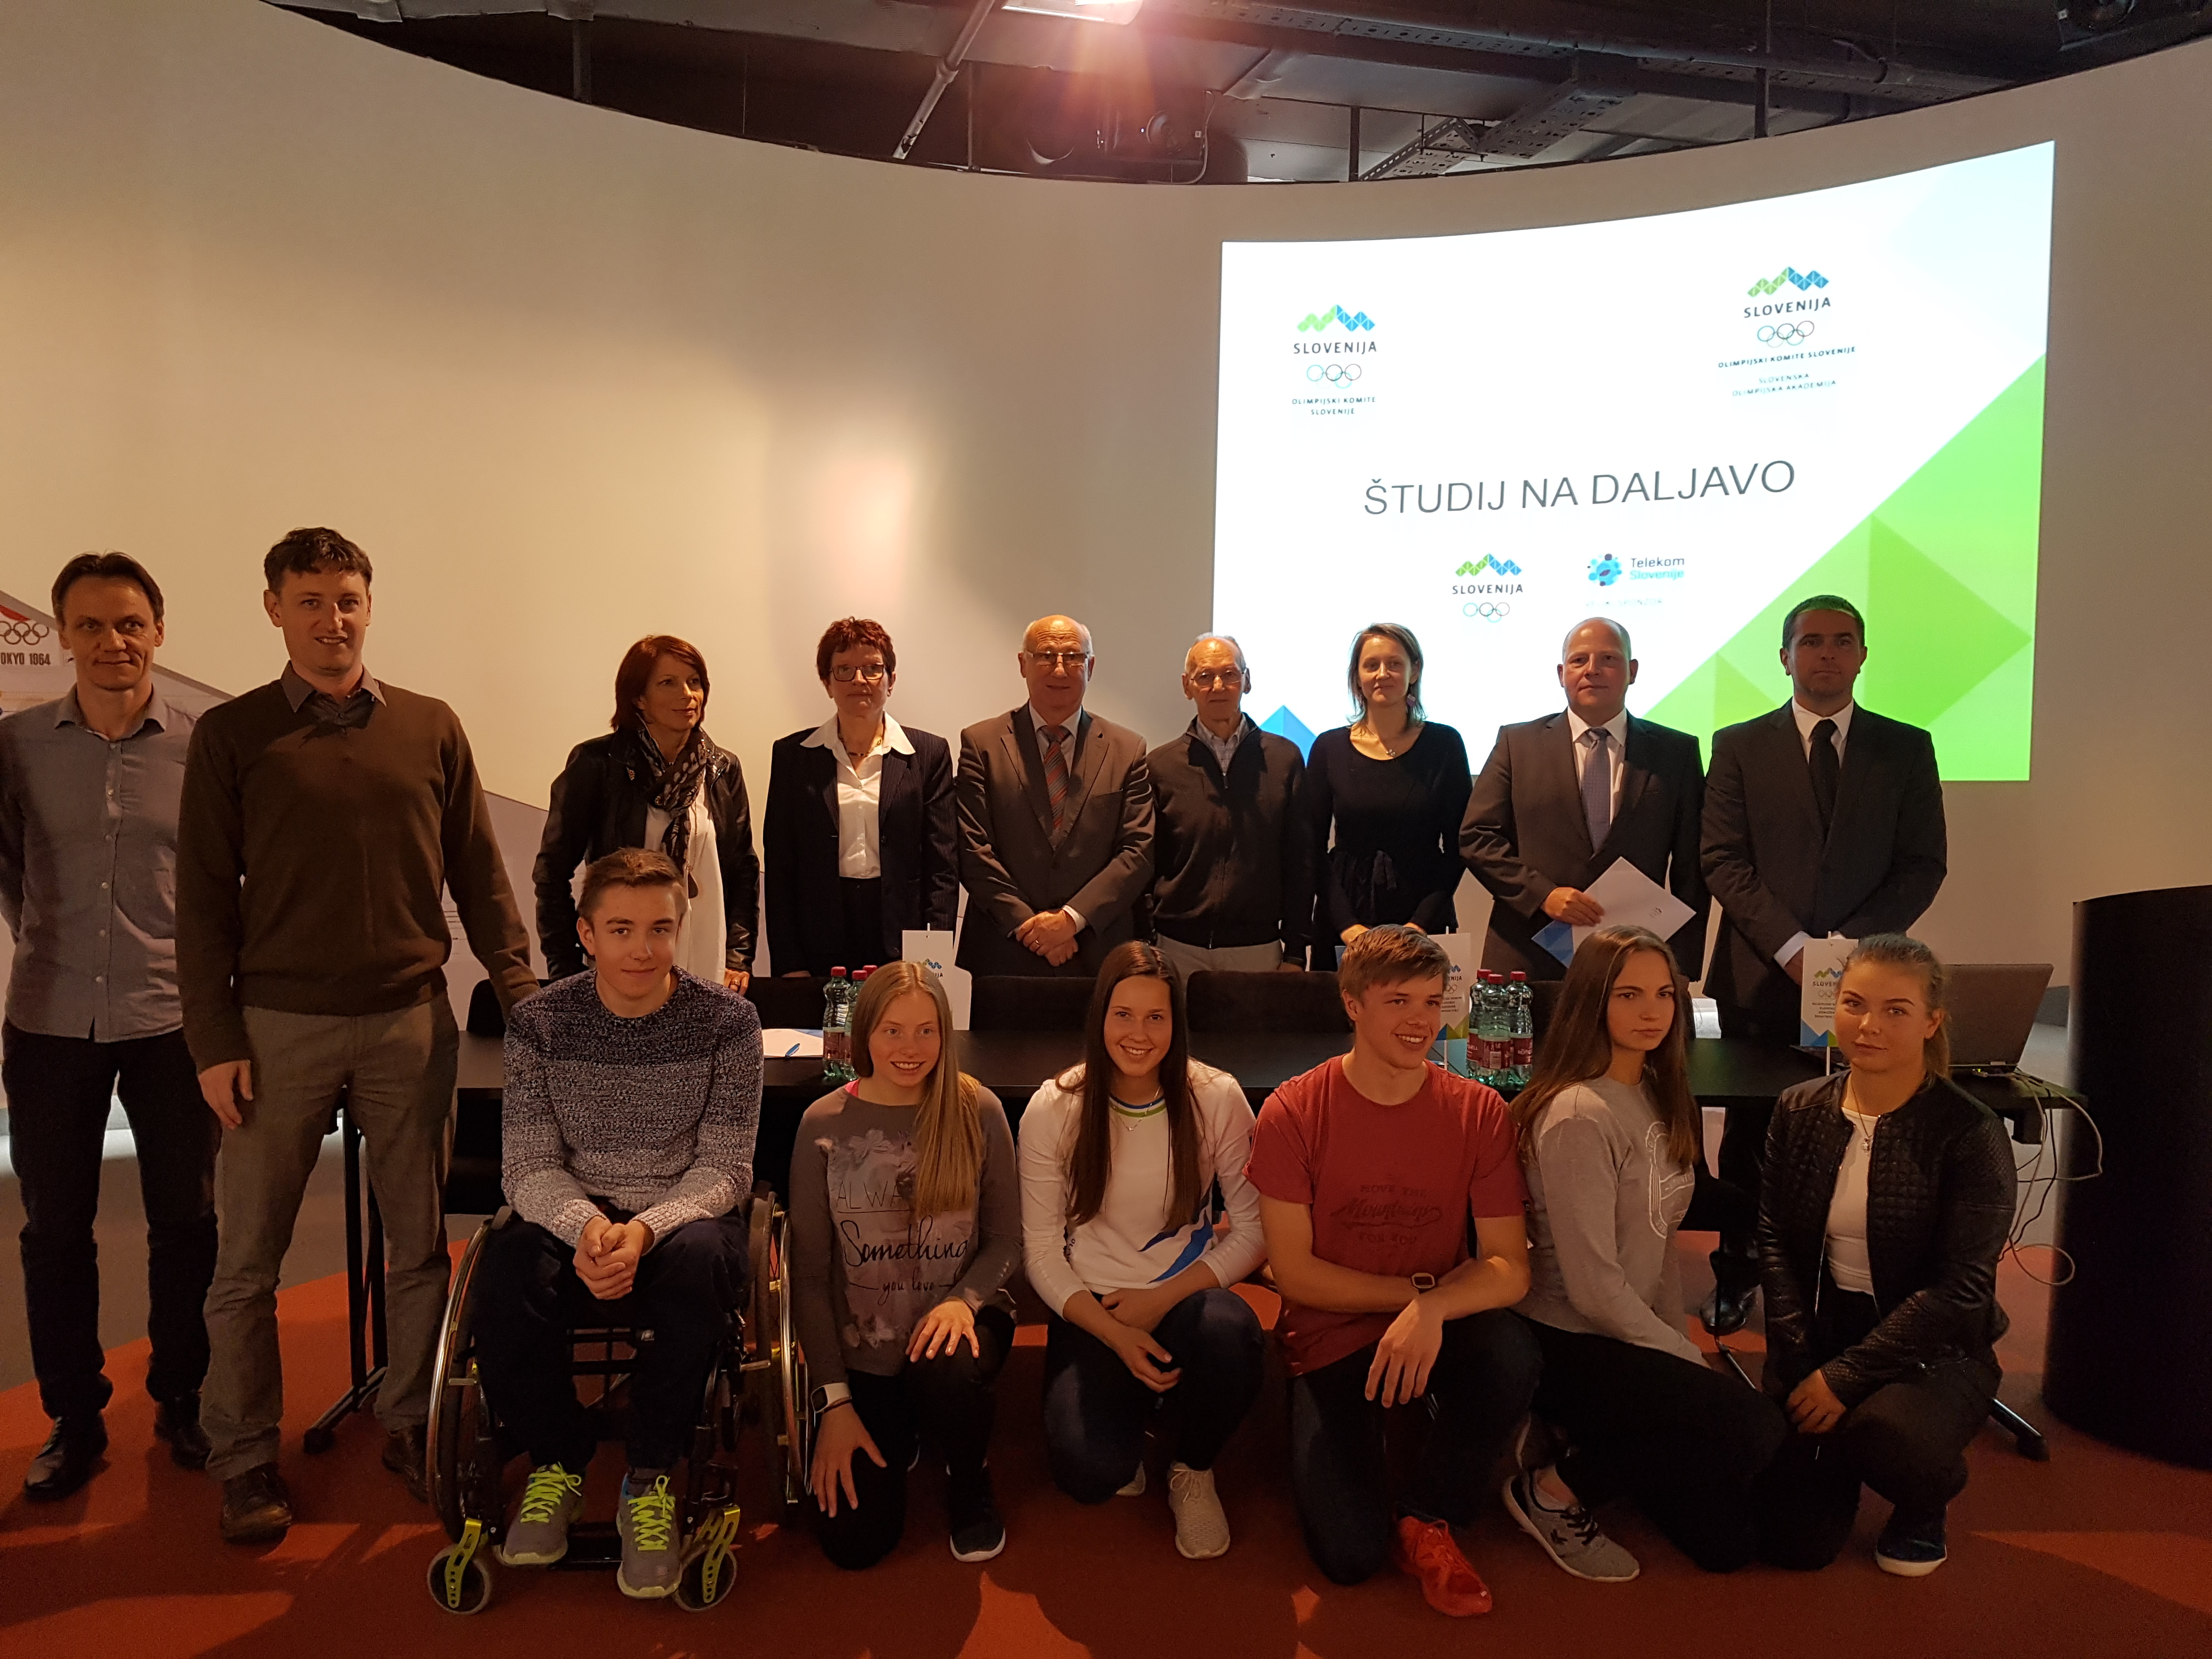 Prek 100 slovenskih športnikov vključenih v študij na daljavo